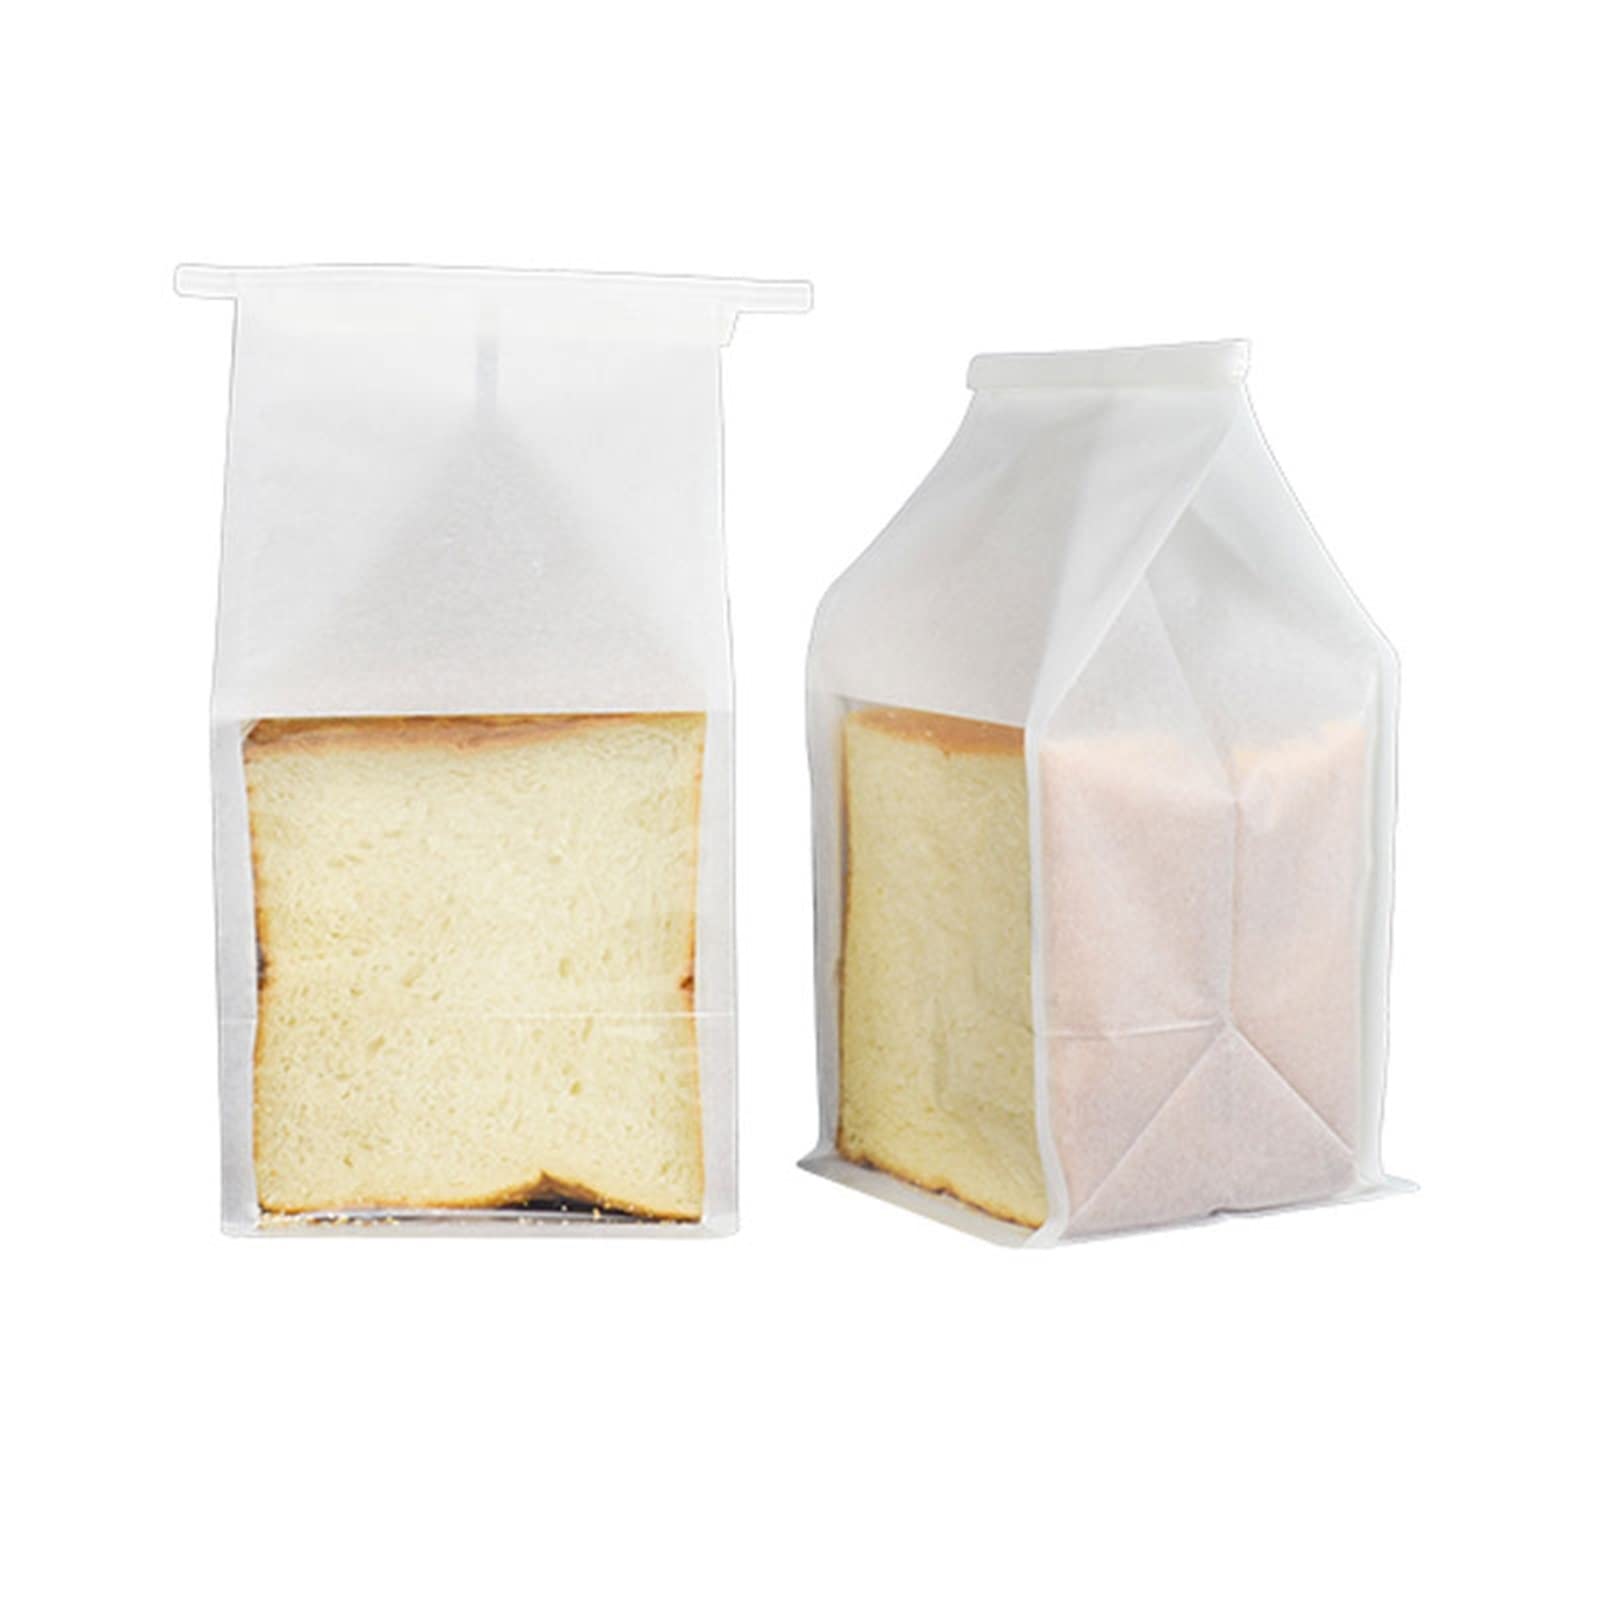 Bread Packaging Custom Boxes Lane